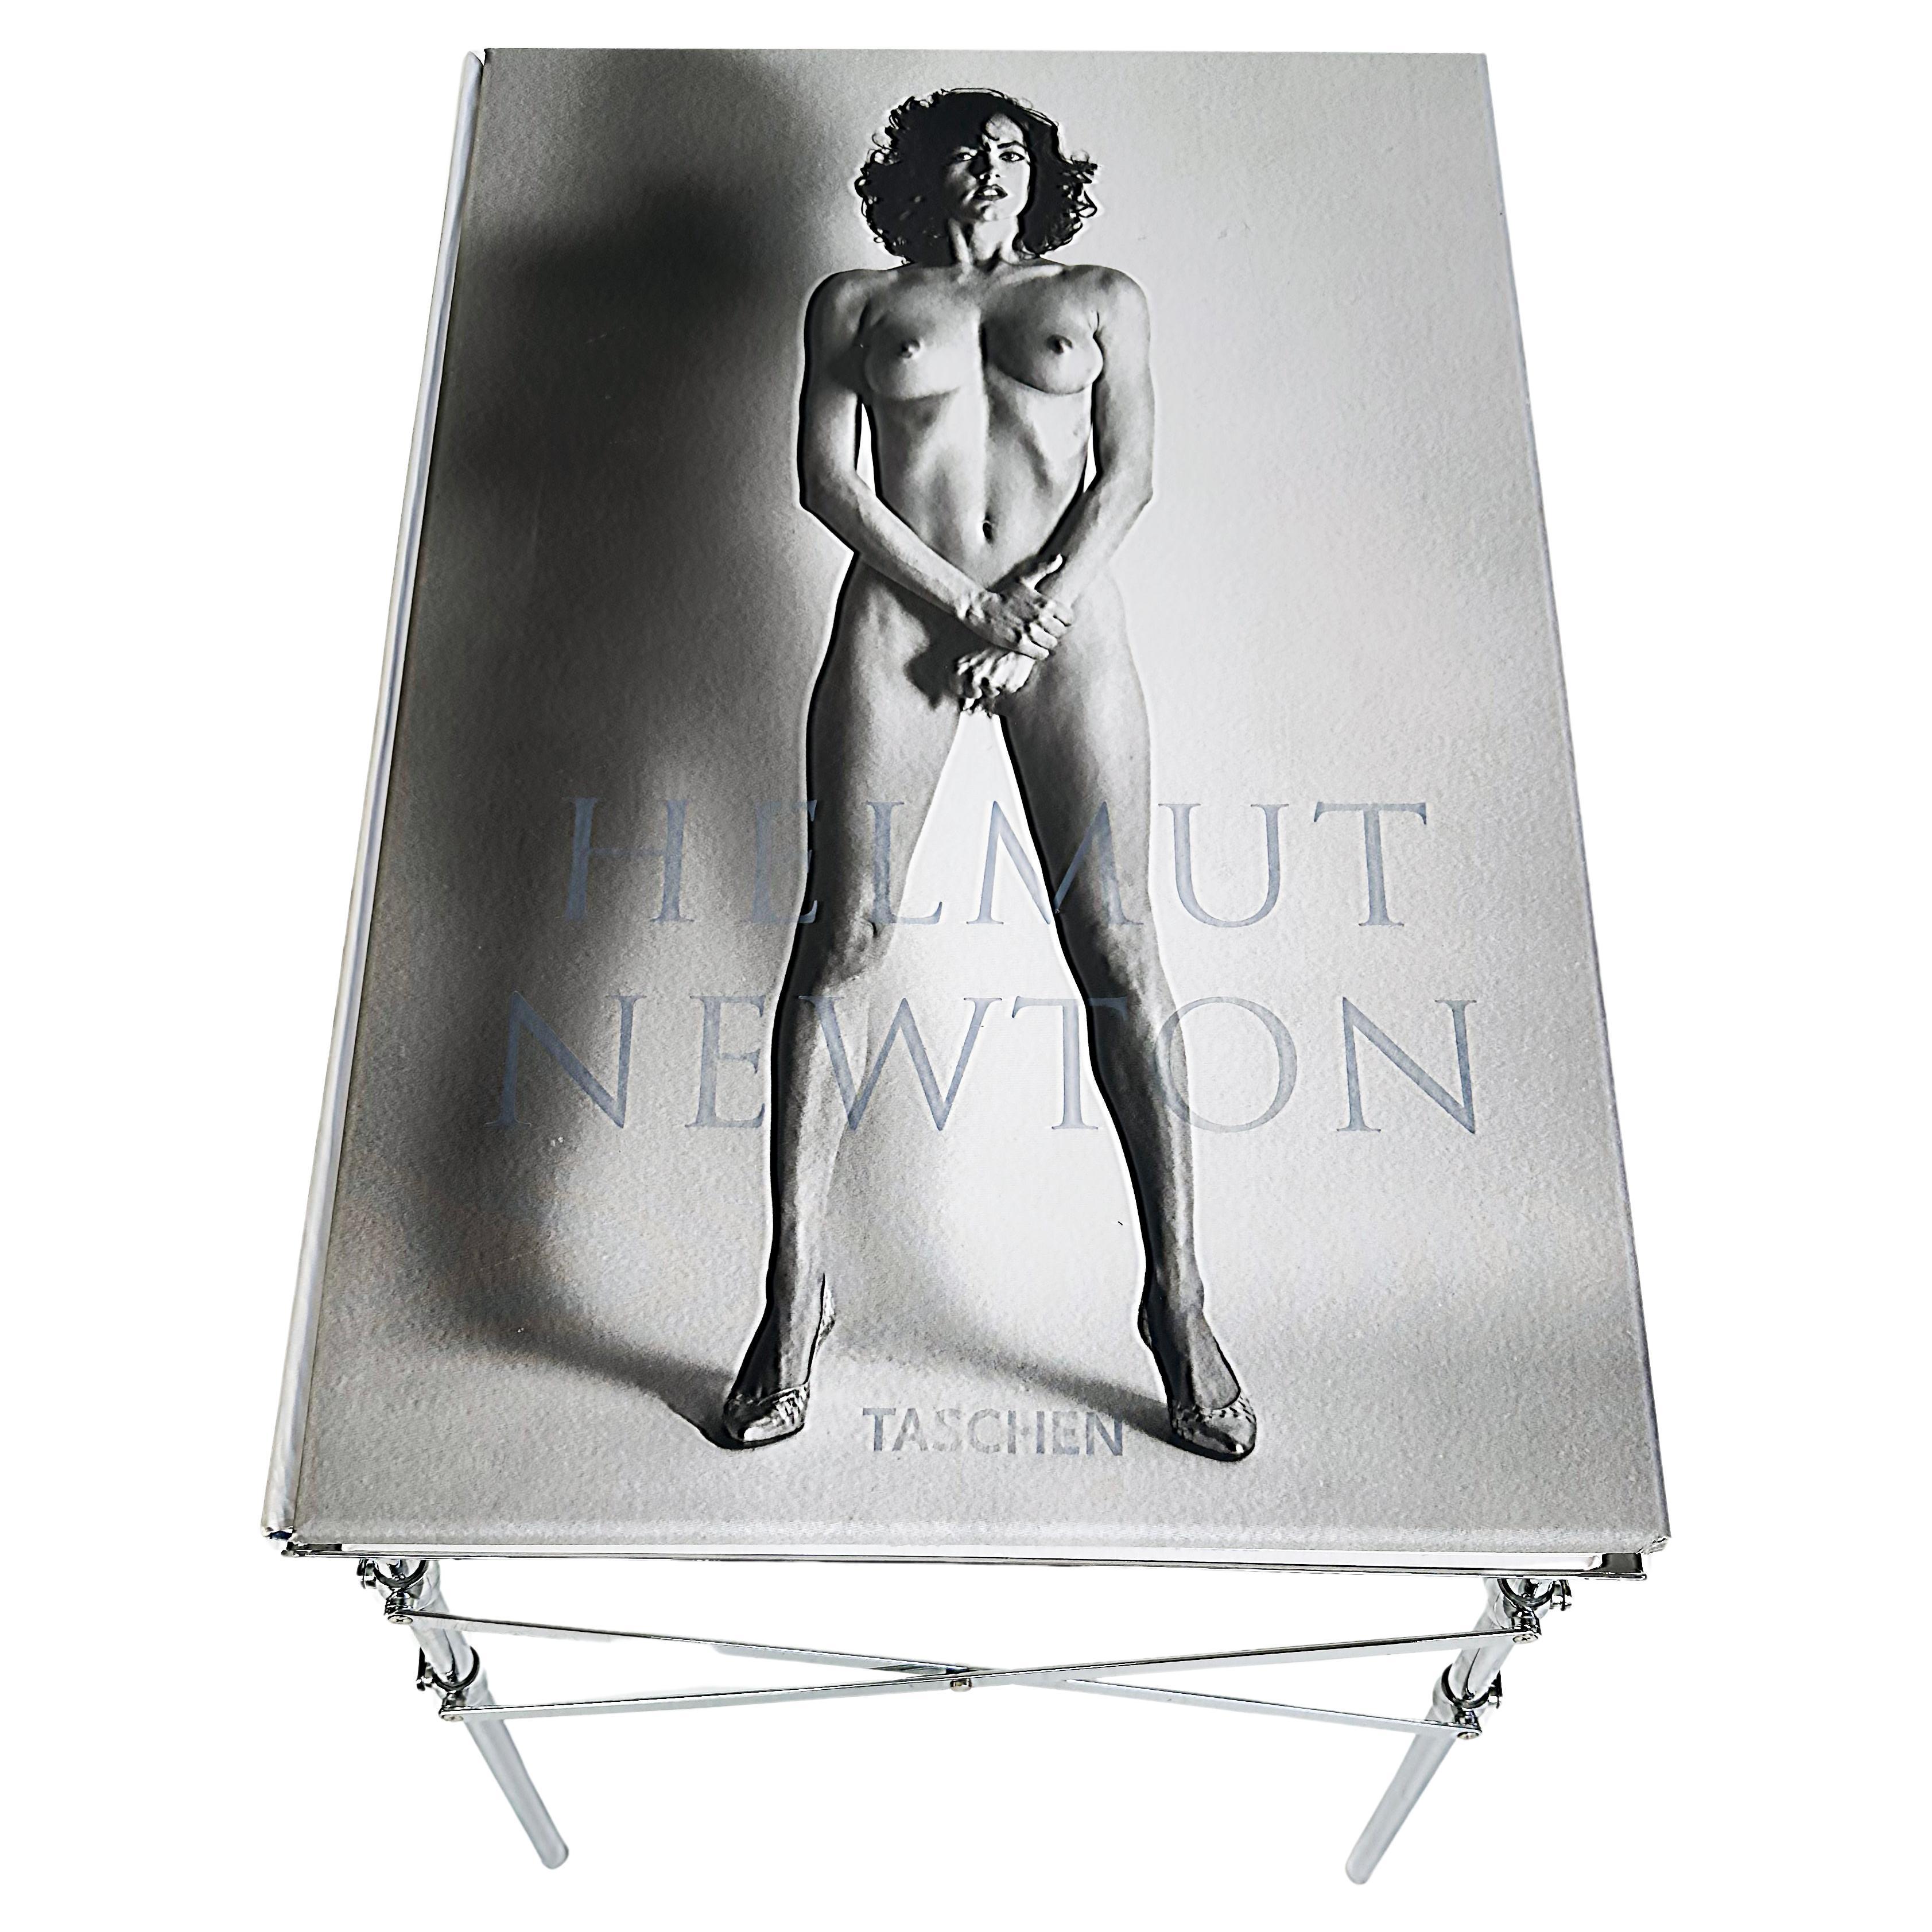 Helmut Newton Sumo Taschenbuch, Philippe Starck Stand, Signiert Limitierte Auflage